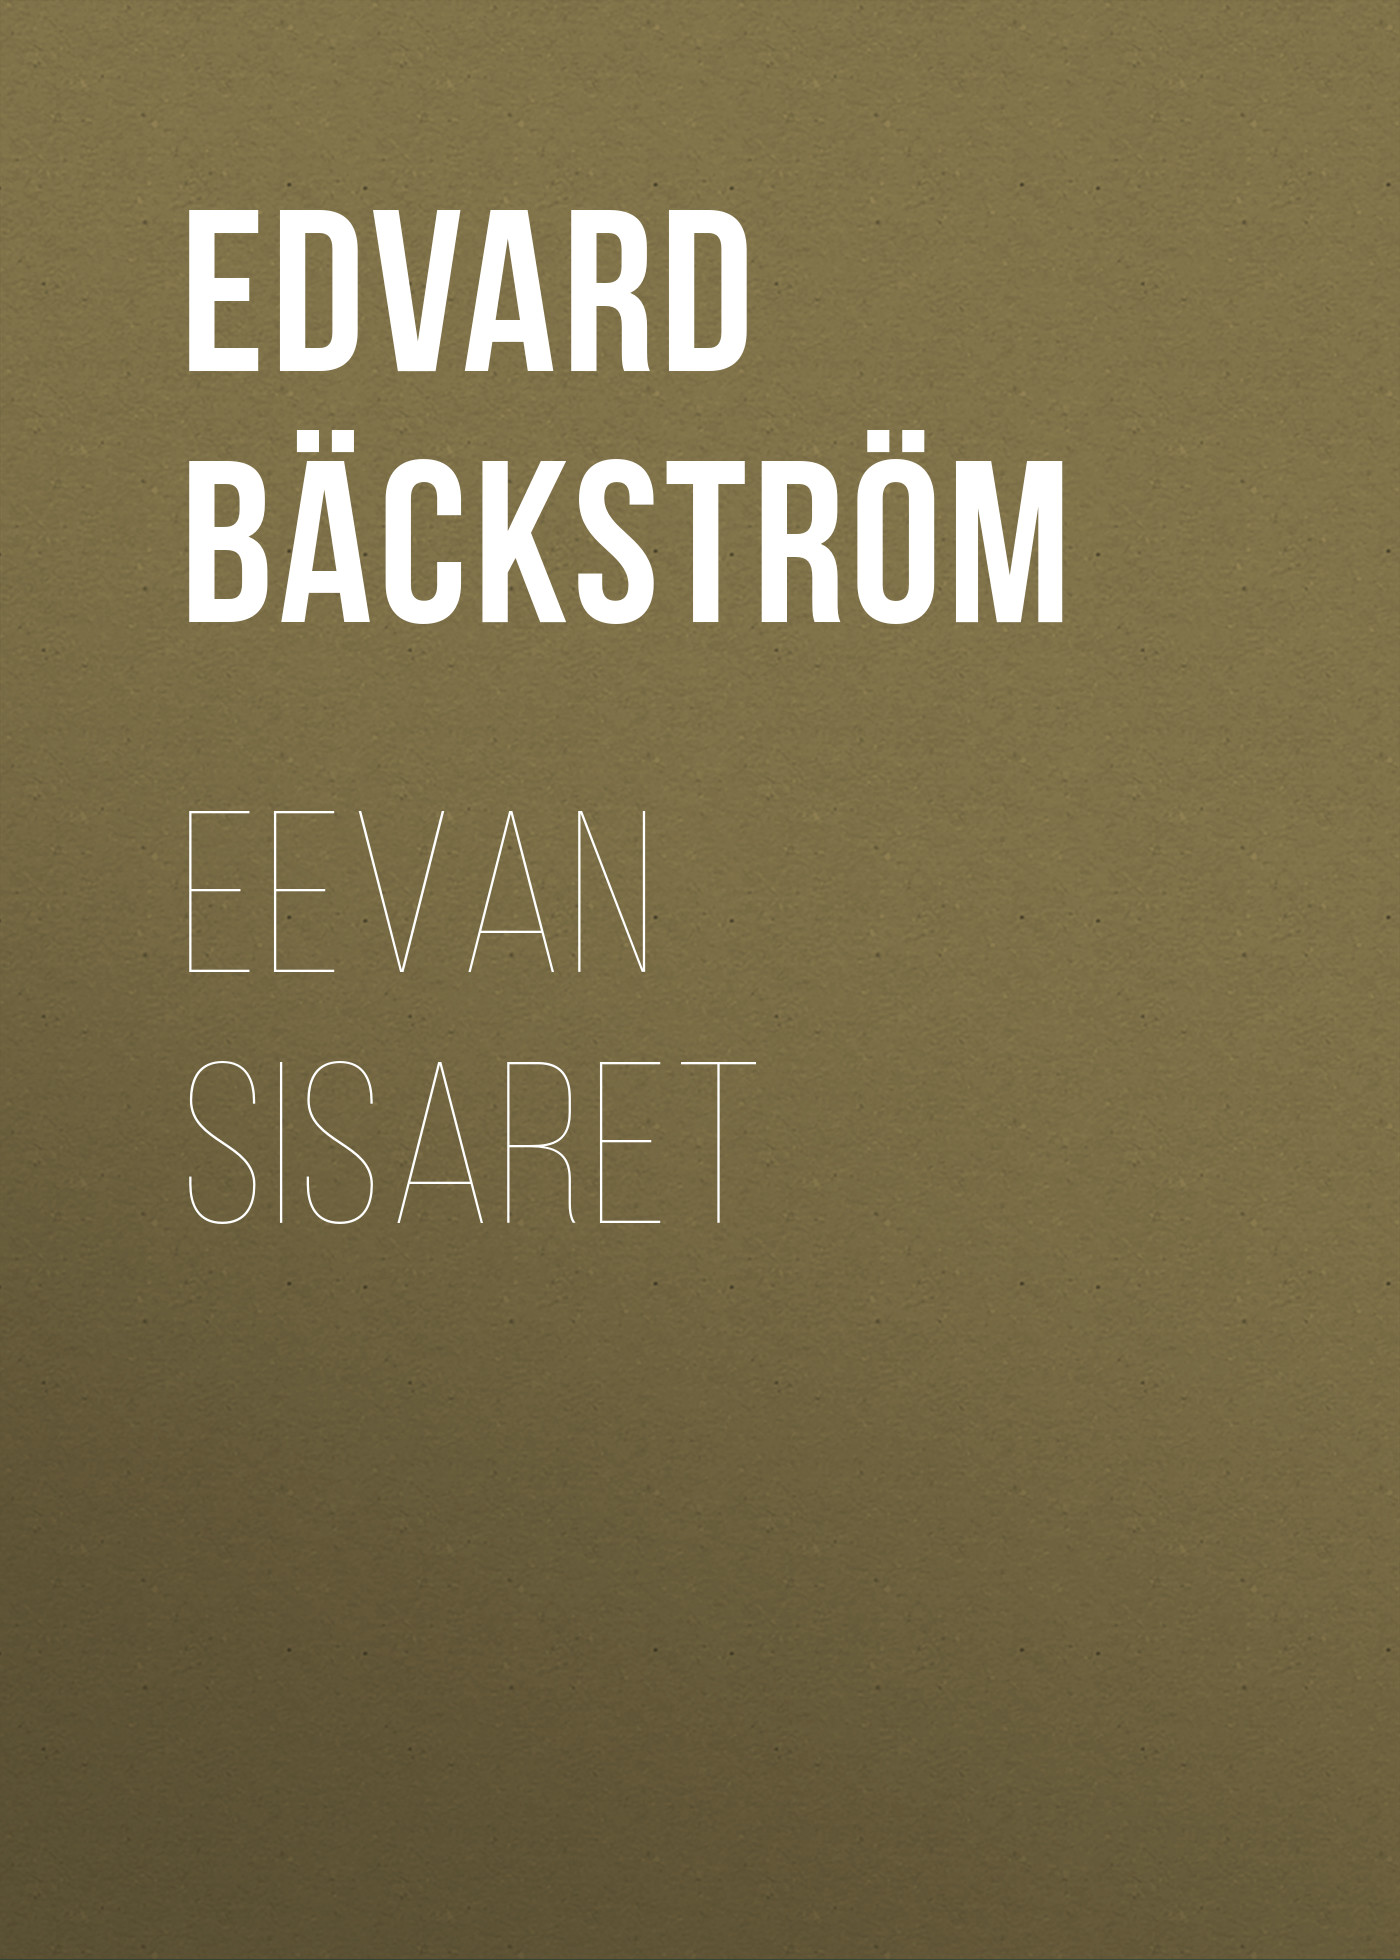 Книга Eevan sisaret из серии , созданная Edvard Bäckström, может относится к жанру Зарубежная старинная литература, Зарубежная классика. Стоимость электронной книги Eevan sisaret с идентификатором 24176740 составляет 0 руб.